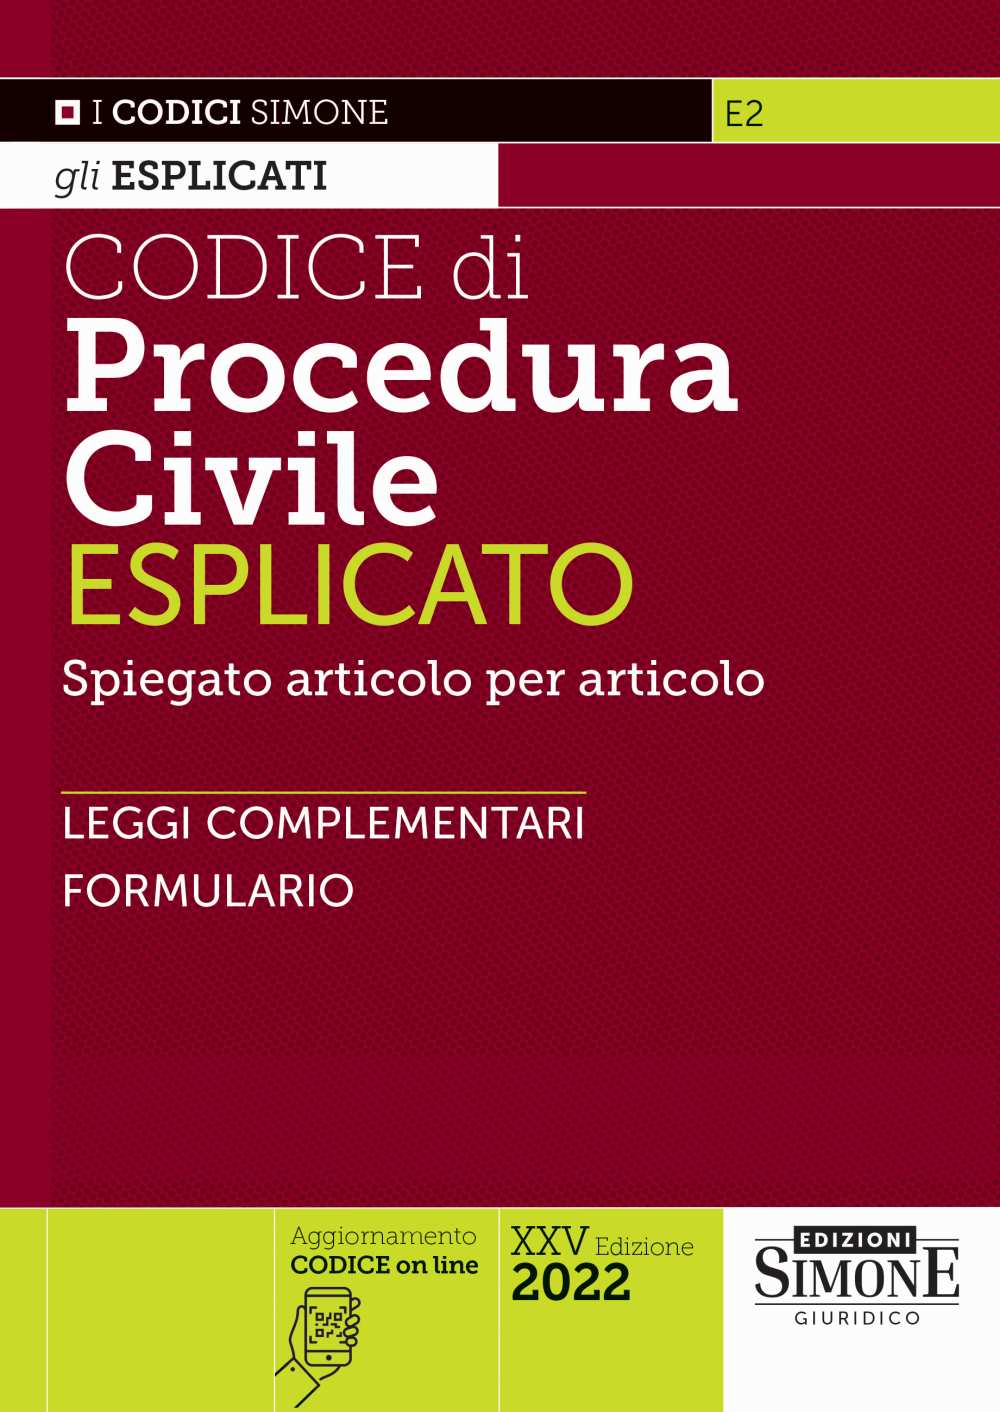 Codice di Procedura Civile Esplicato - E2